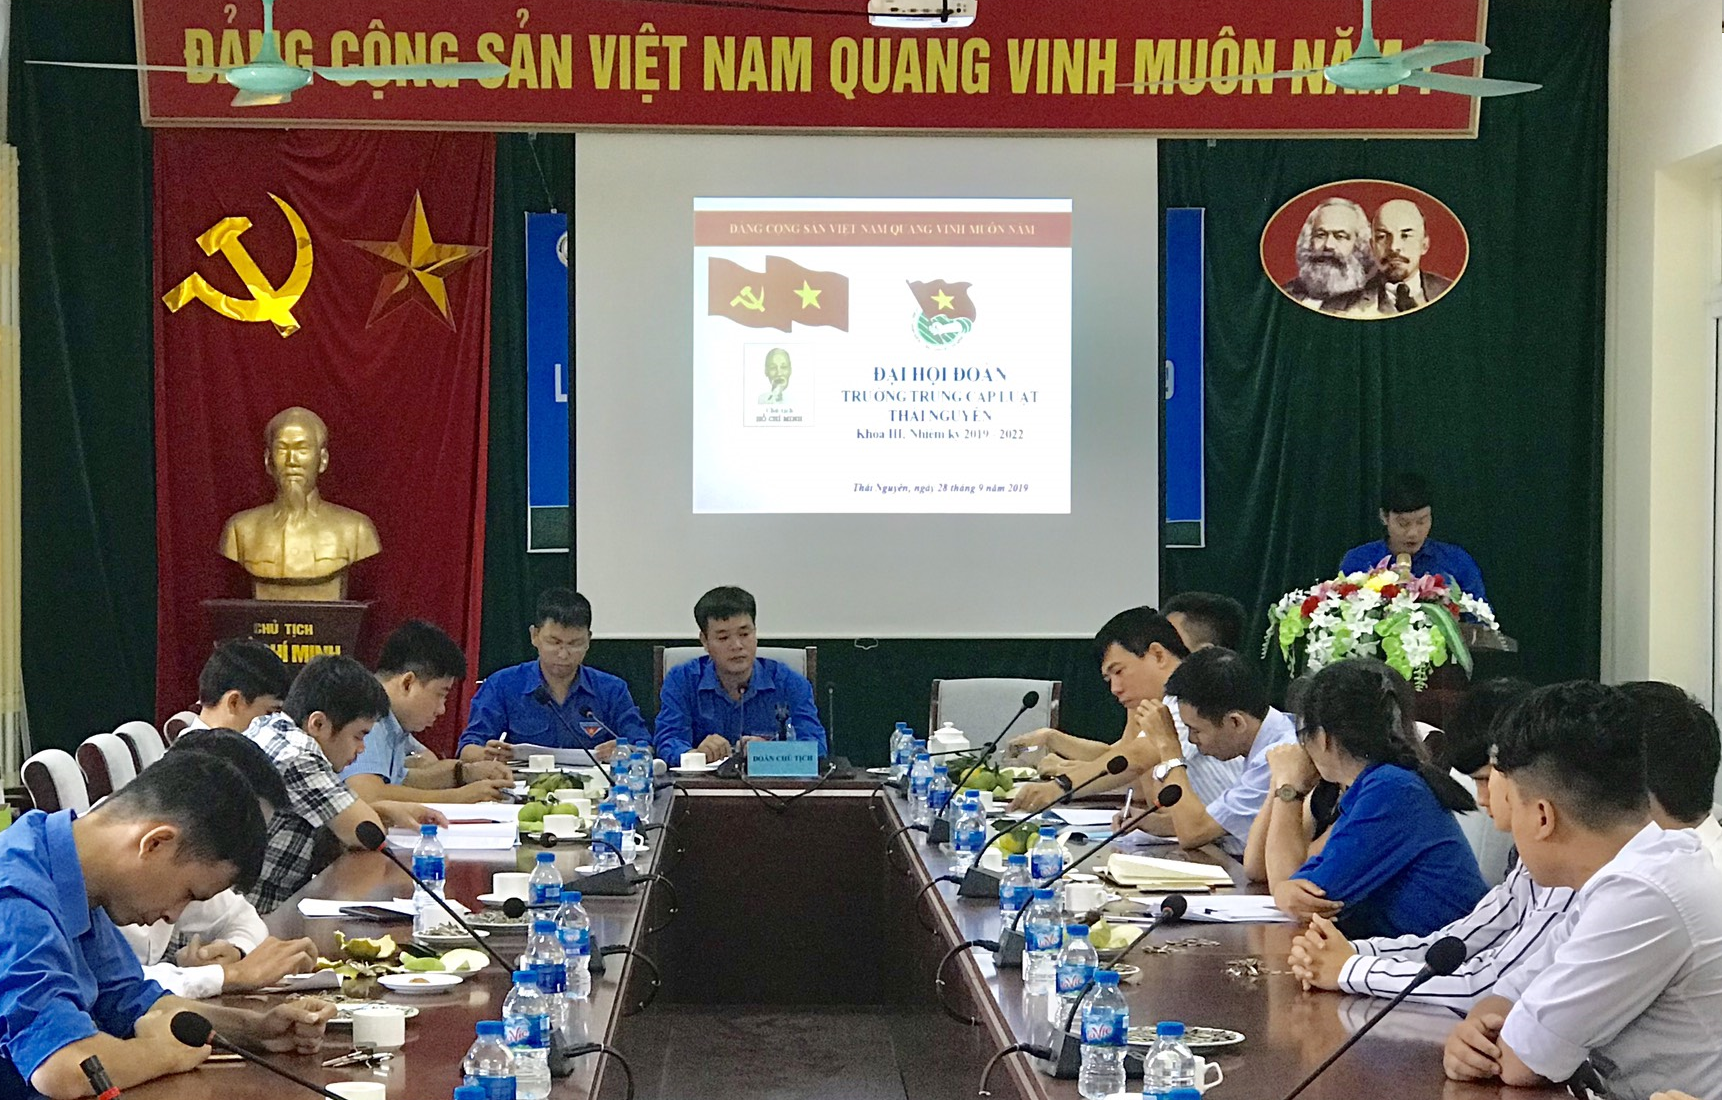 Đại hội Đoàn Trường TC Luật Thái Nguyên nhiệm kỳ 2019 - 2022 thành công tốt đẹp